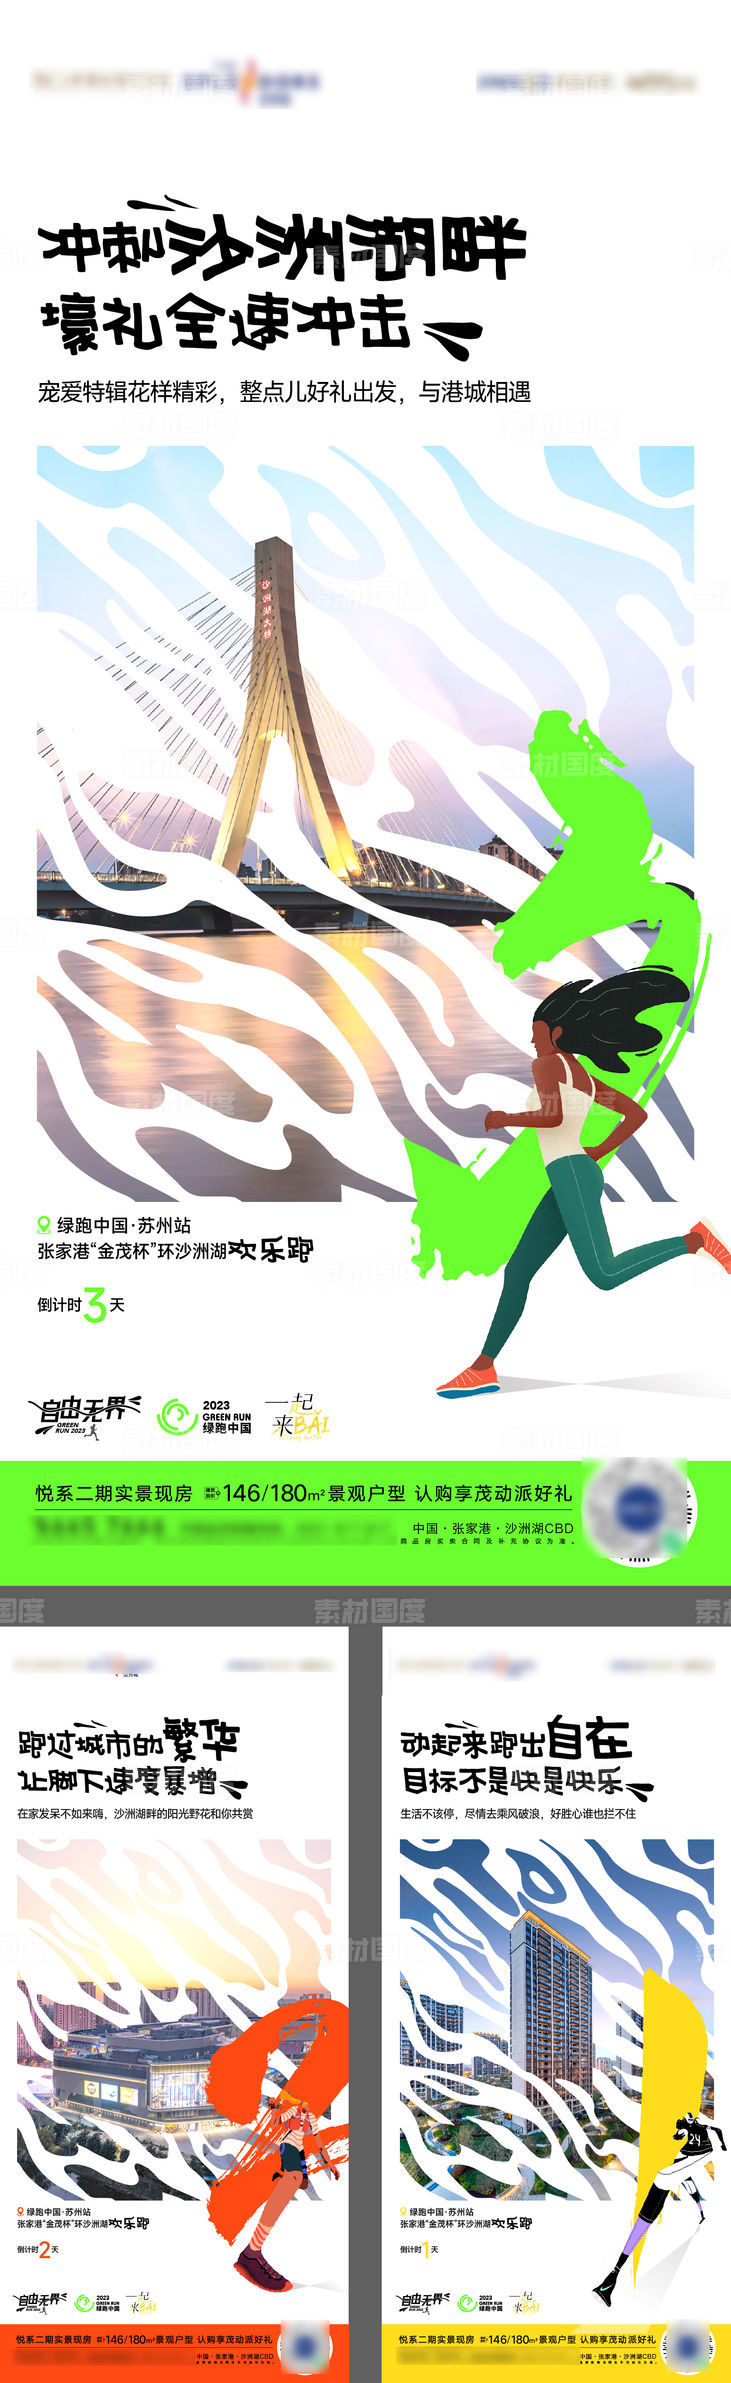 绿跑乐跑马拉松品牌活动海报